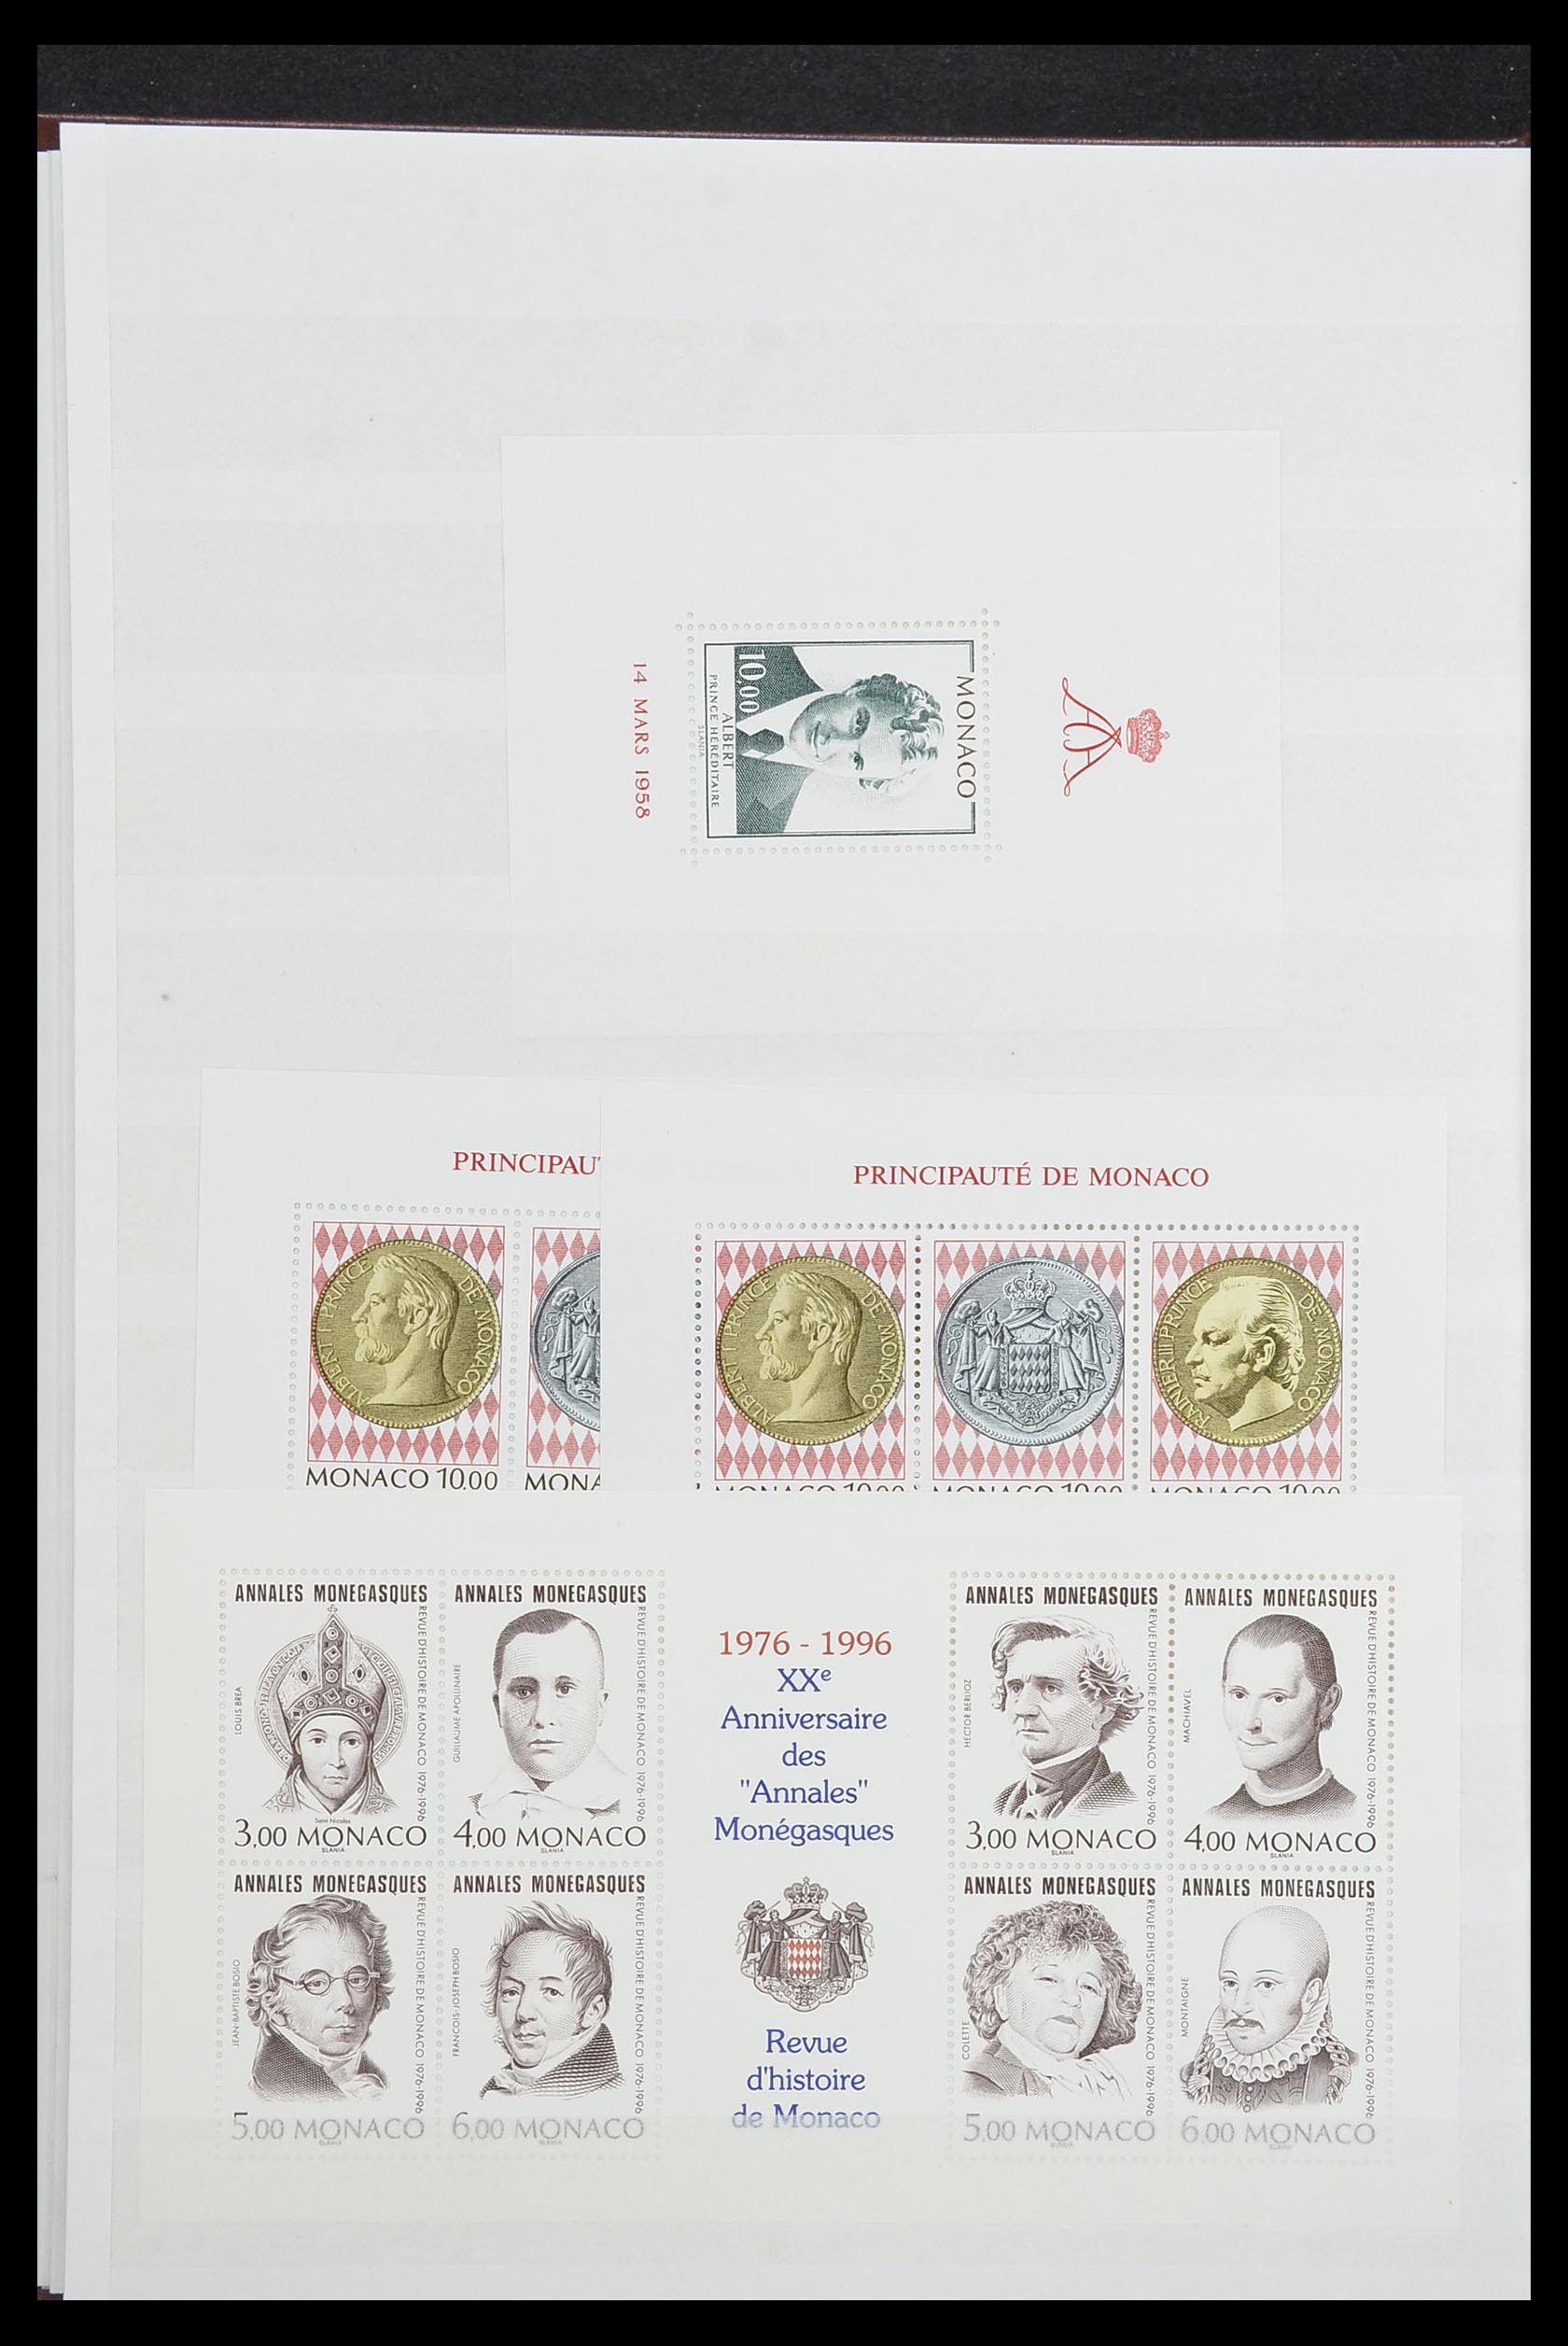 33833 008 - Stamp collection 33833 Monaco souvenir sheets 1979-2015.